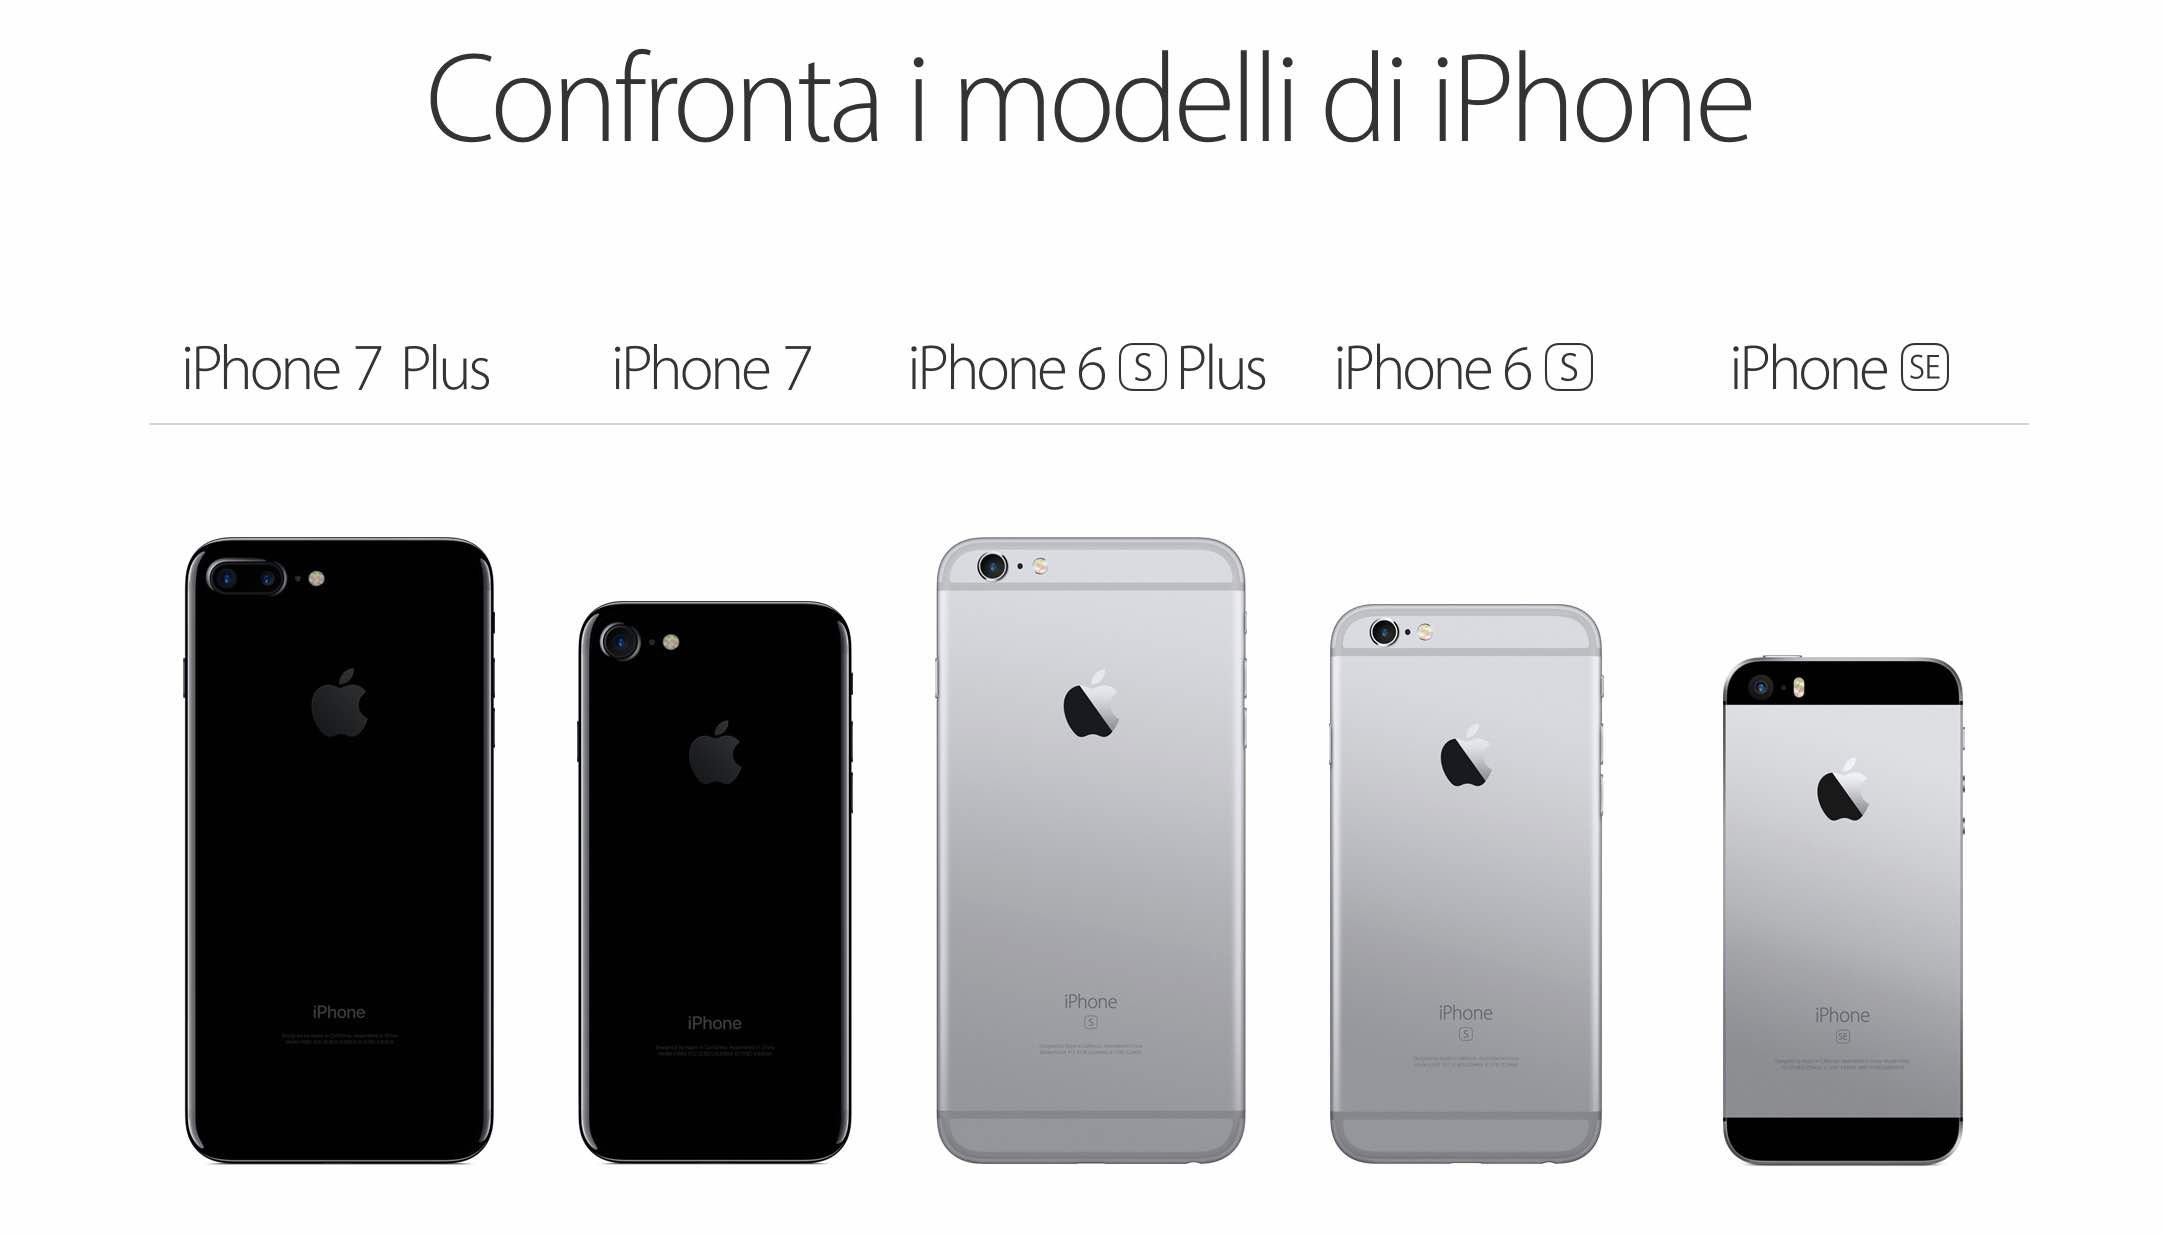 Iphone 7 plus динамика цен. Iphone 7 Plus и iphone 6. Модели iphone 6 Plus. Айфон 6 и айфон 7. Сравнение моделей IРHОNЕ.